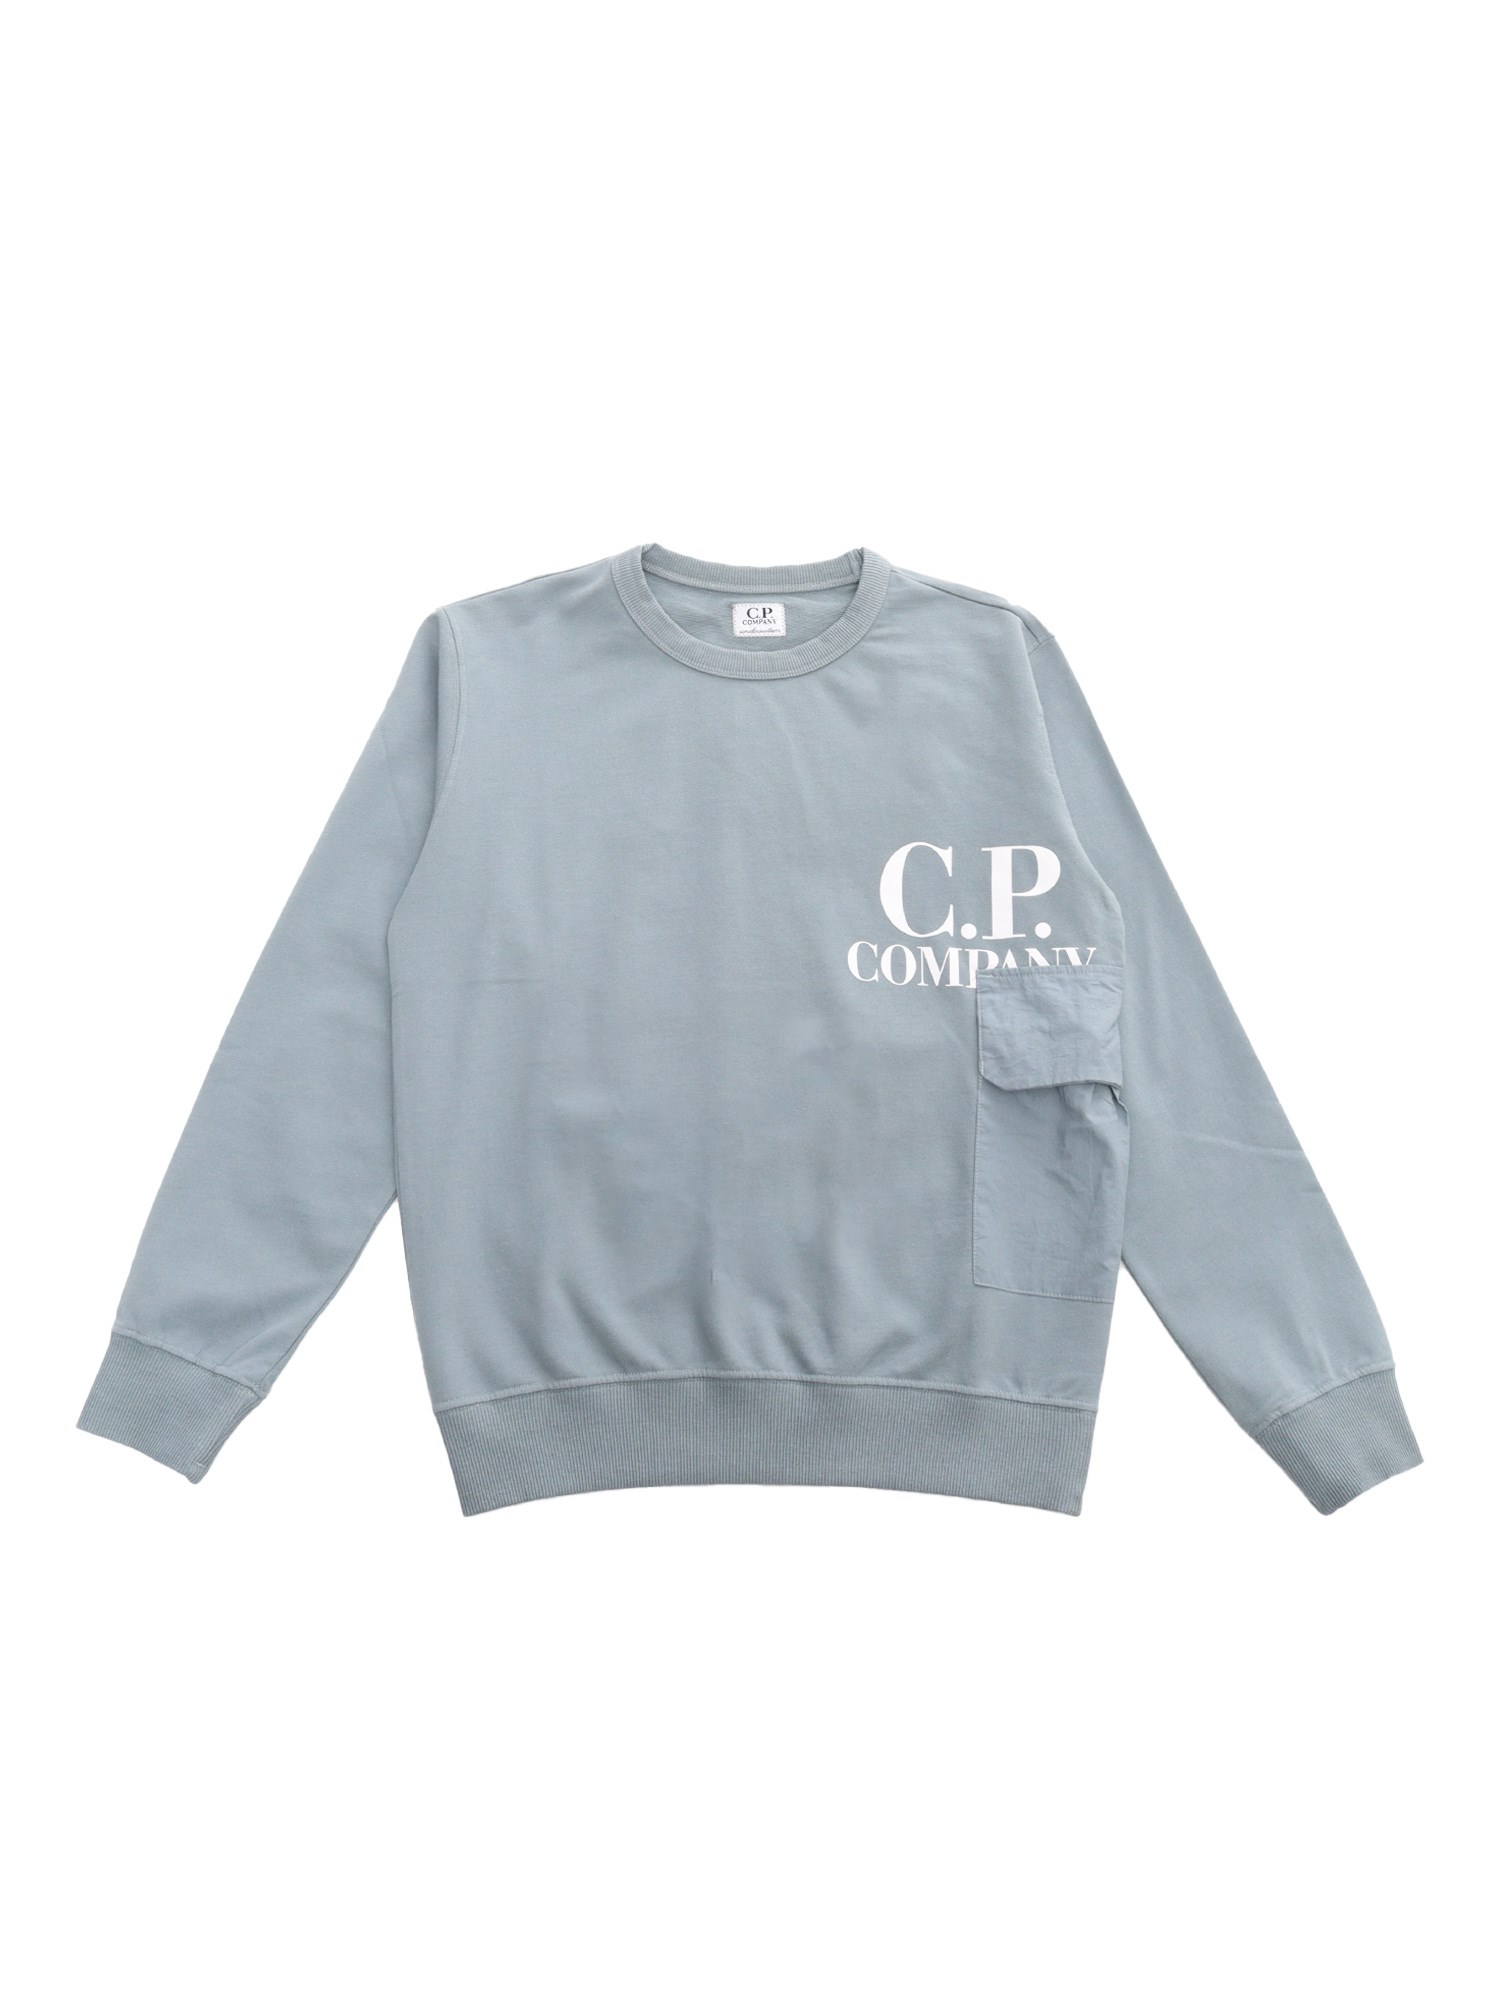 C.p. Company Grey Sweatshirt In Grey